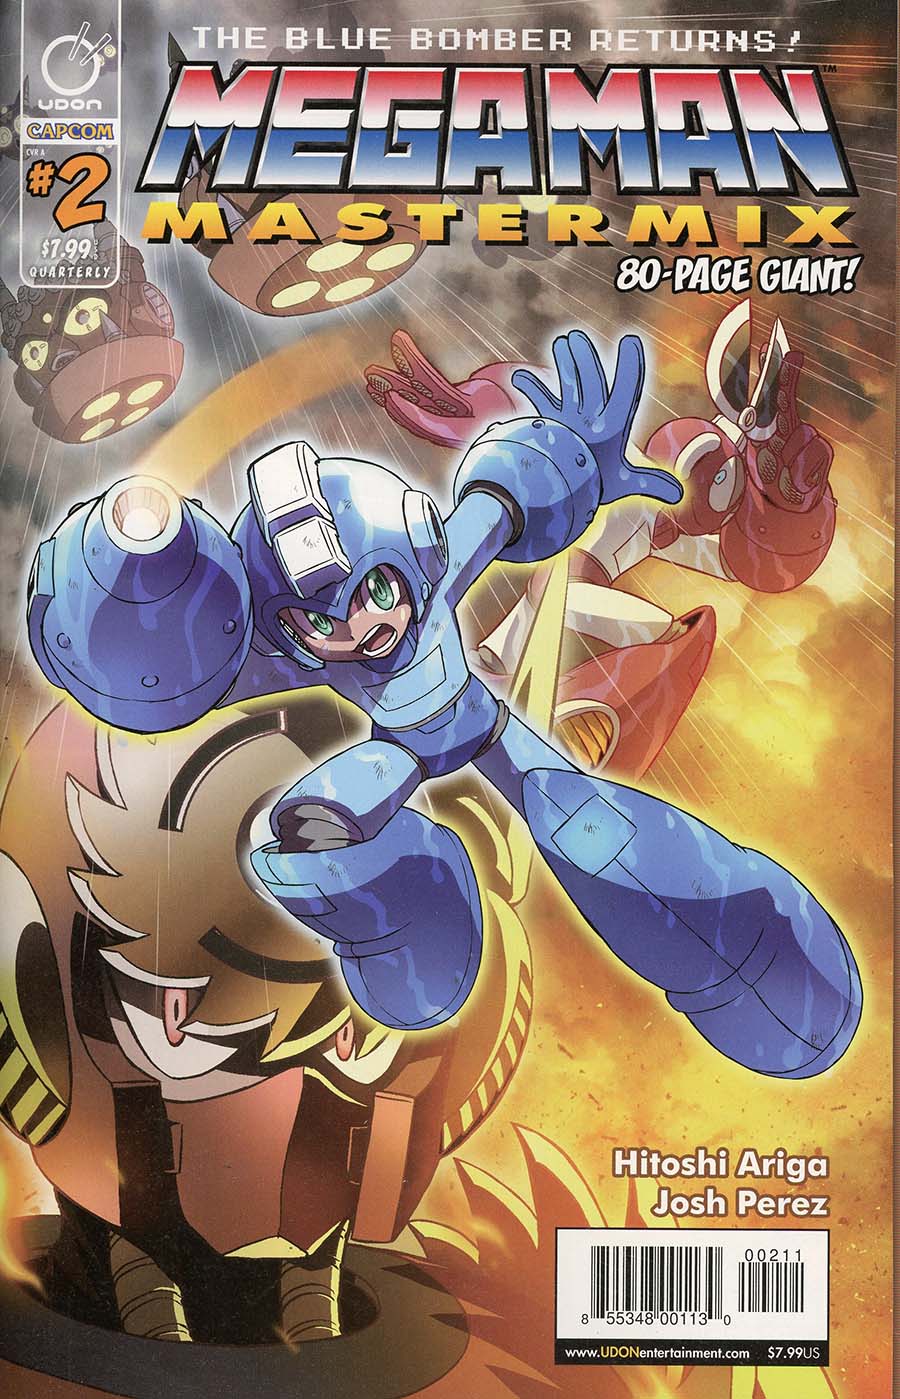 Mega Man Mastermix #2 Cover A Regular Hitoshi Ariga Cover